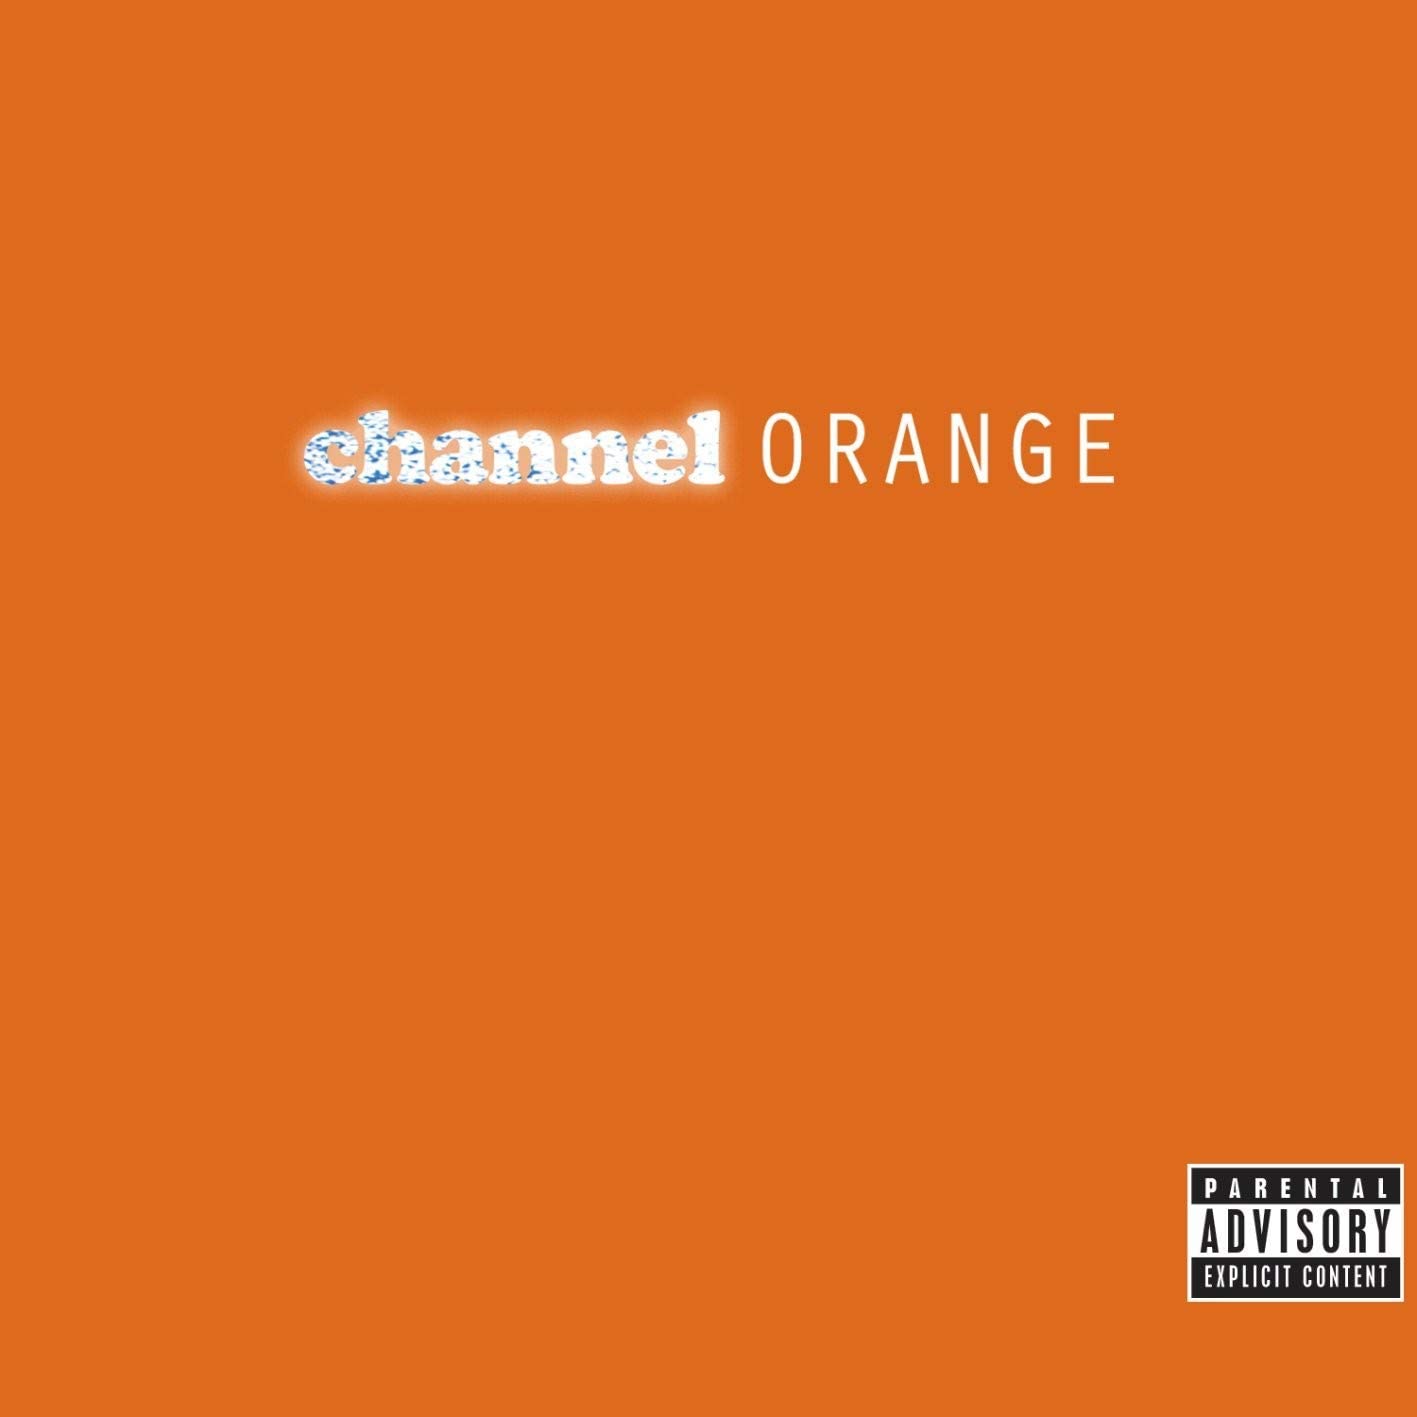 Channel Orange - Frank Ocean, 2012